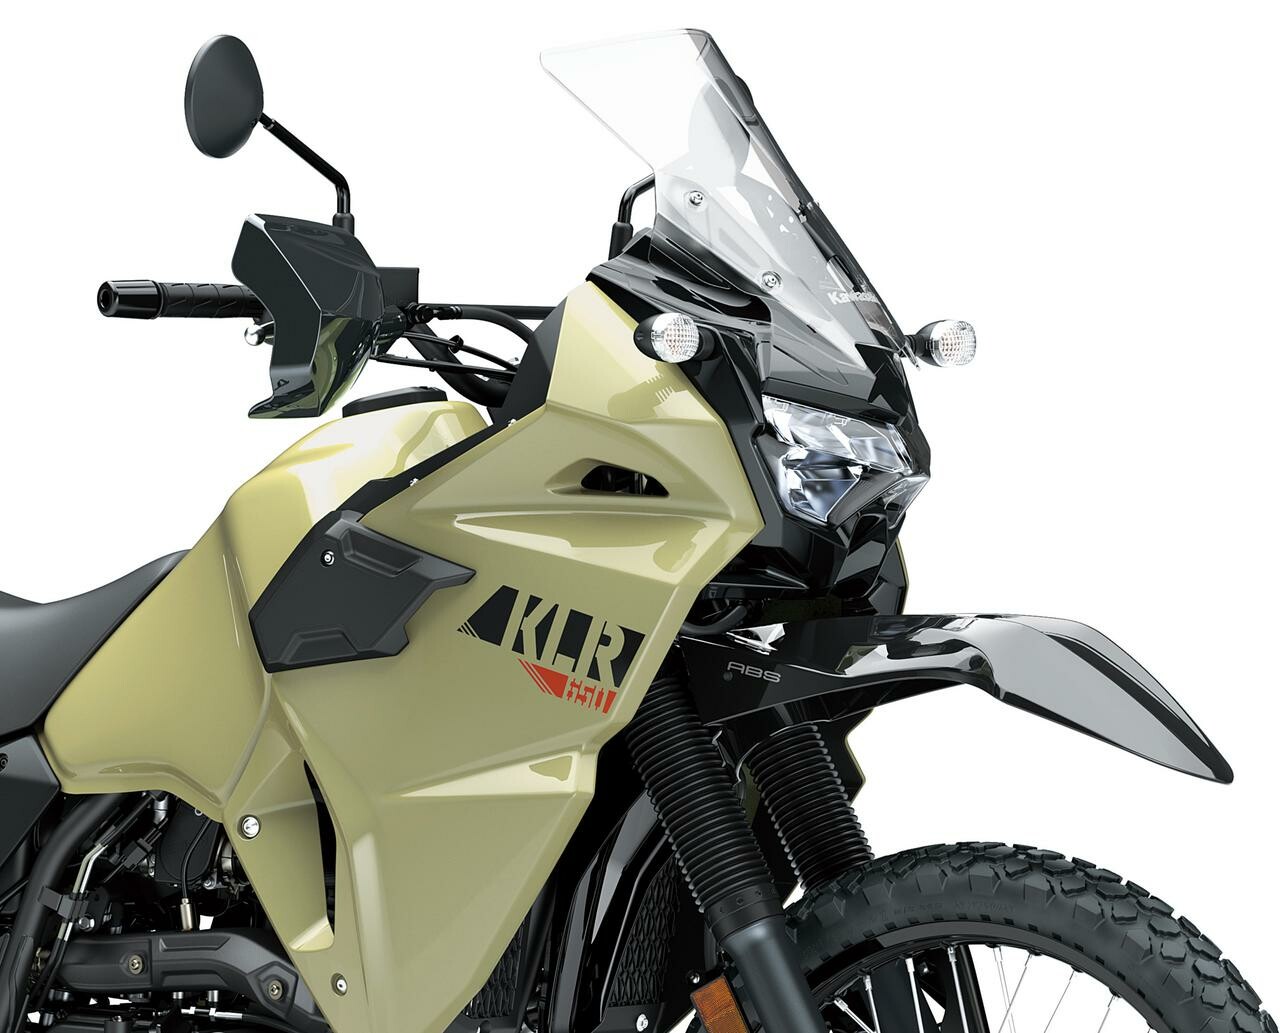 カワサキが新型「KLR650」を米国で発表！ 13年ぶりのモデルチェンジを受けて魅力的なアドベンチャーツアラーへと変貌